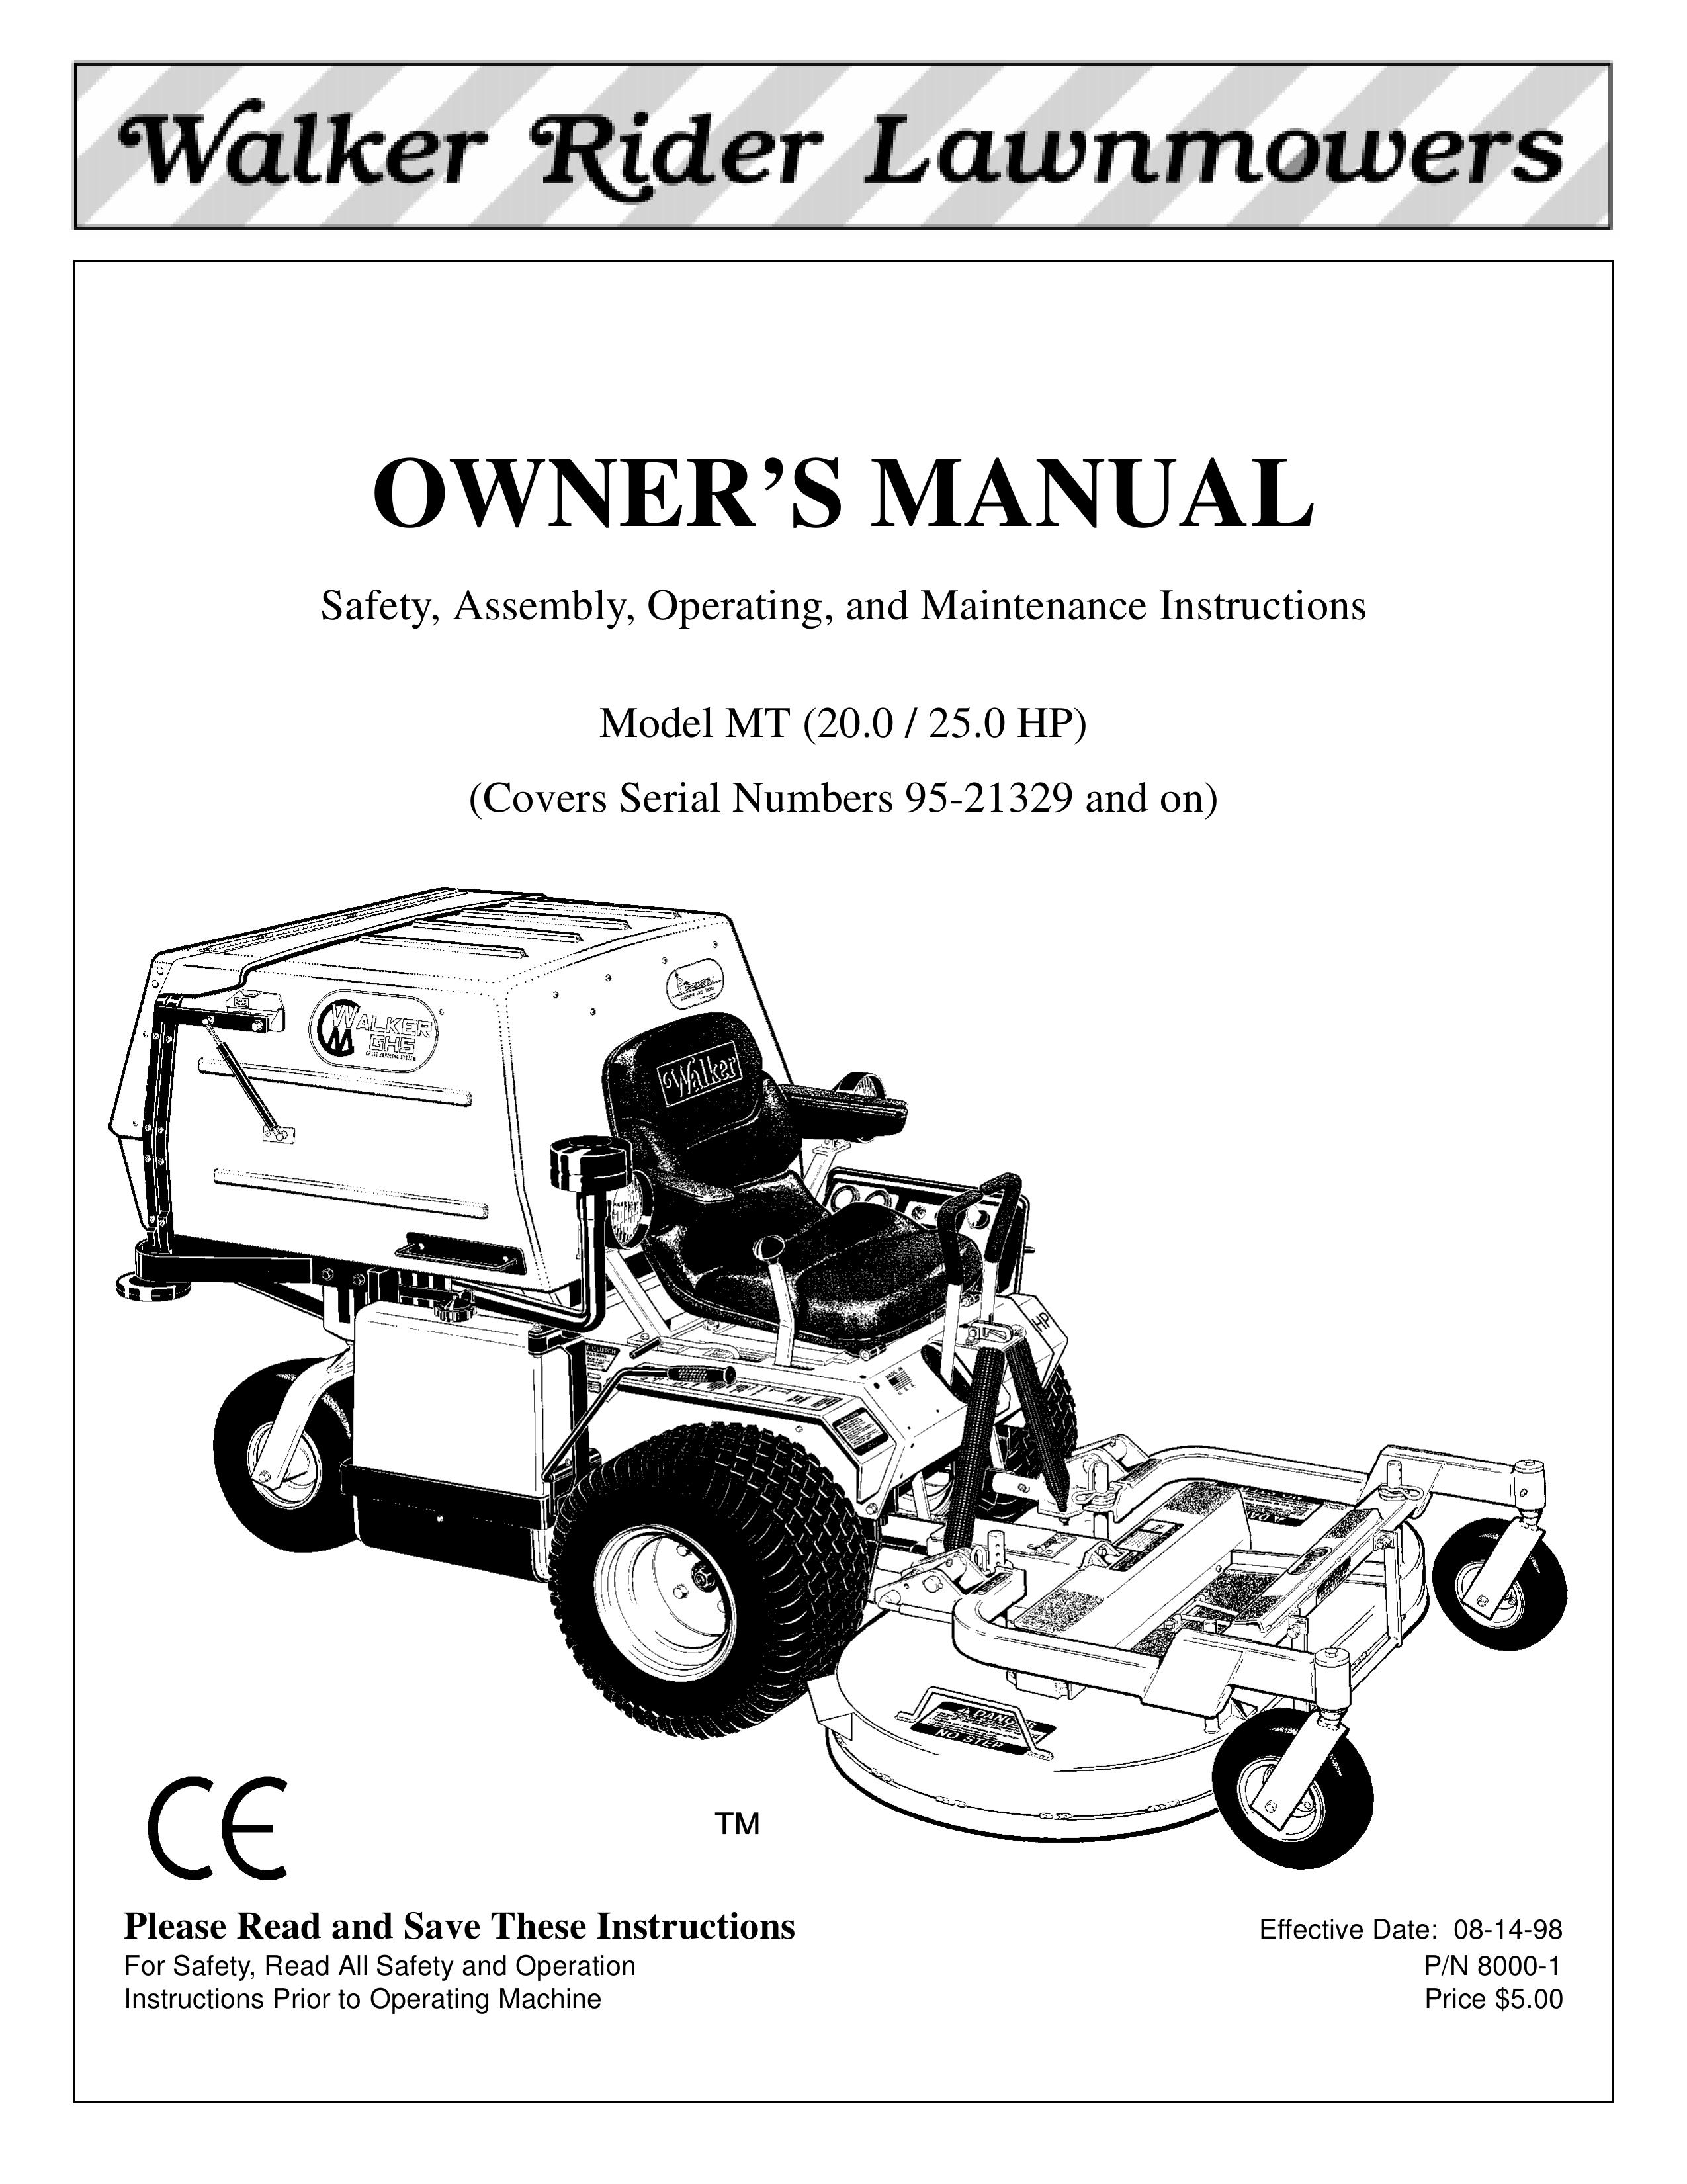 Walker MT Lawn Mower User Manual